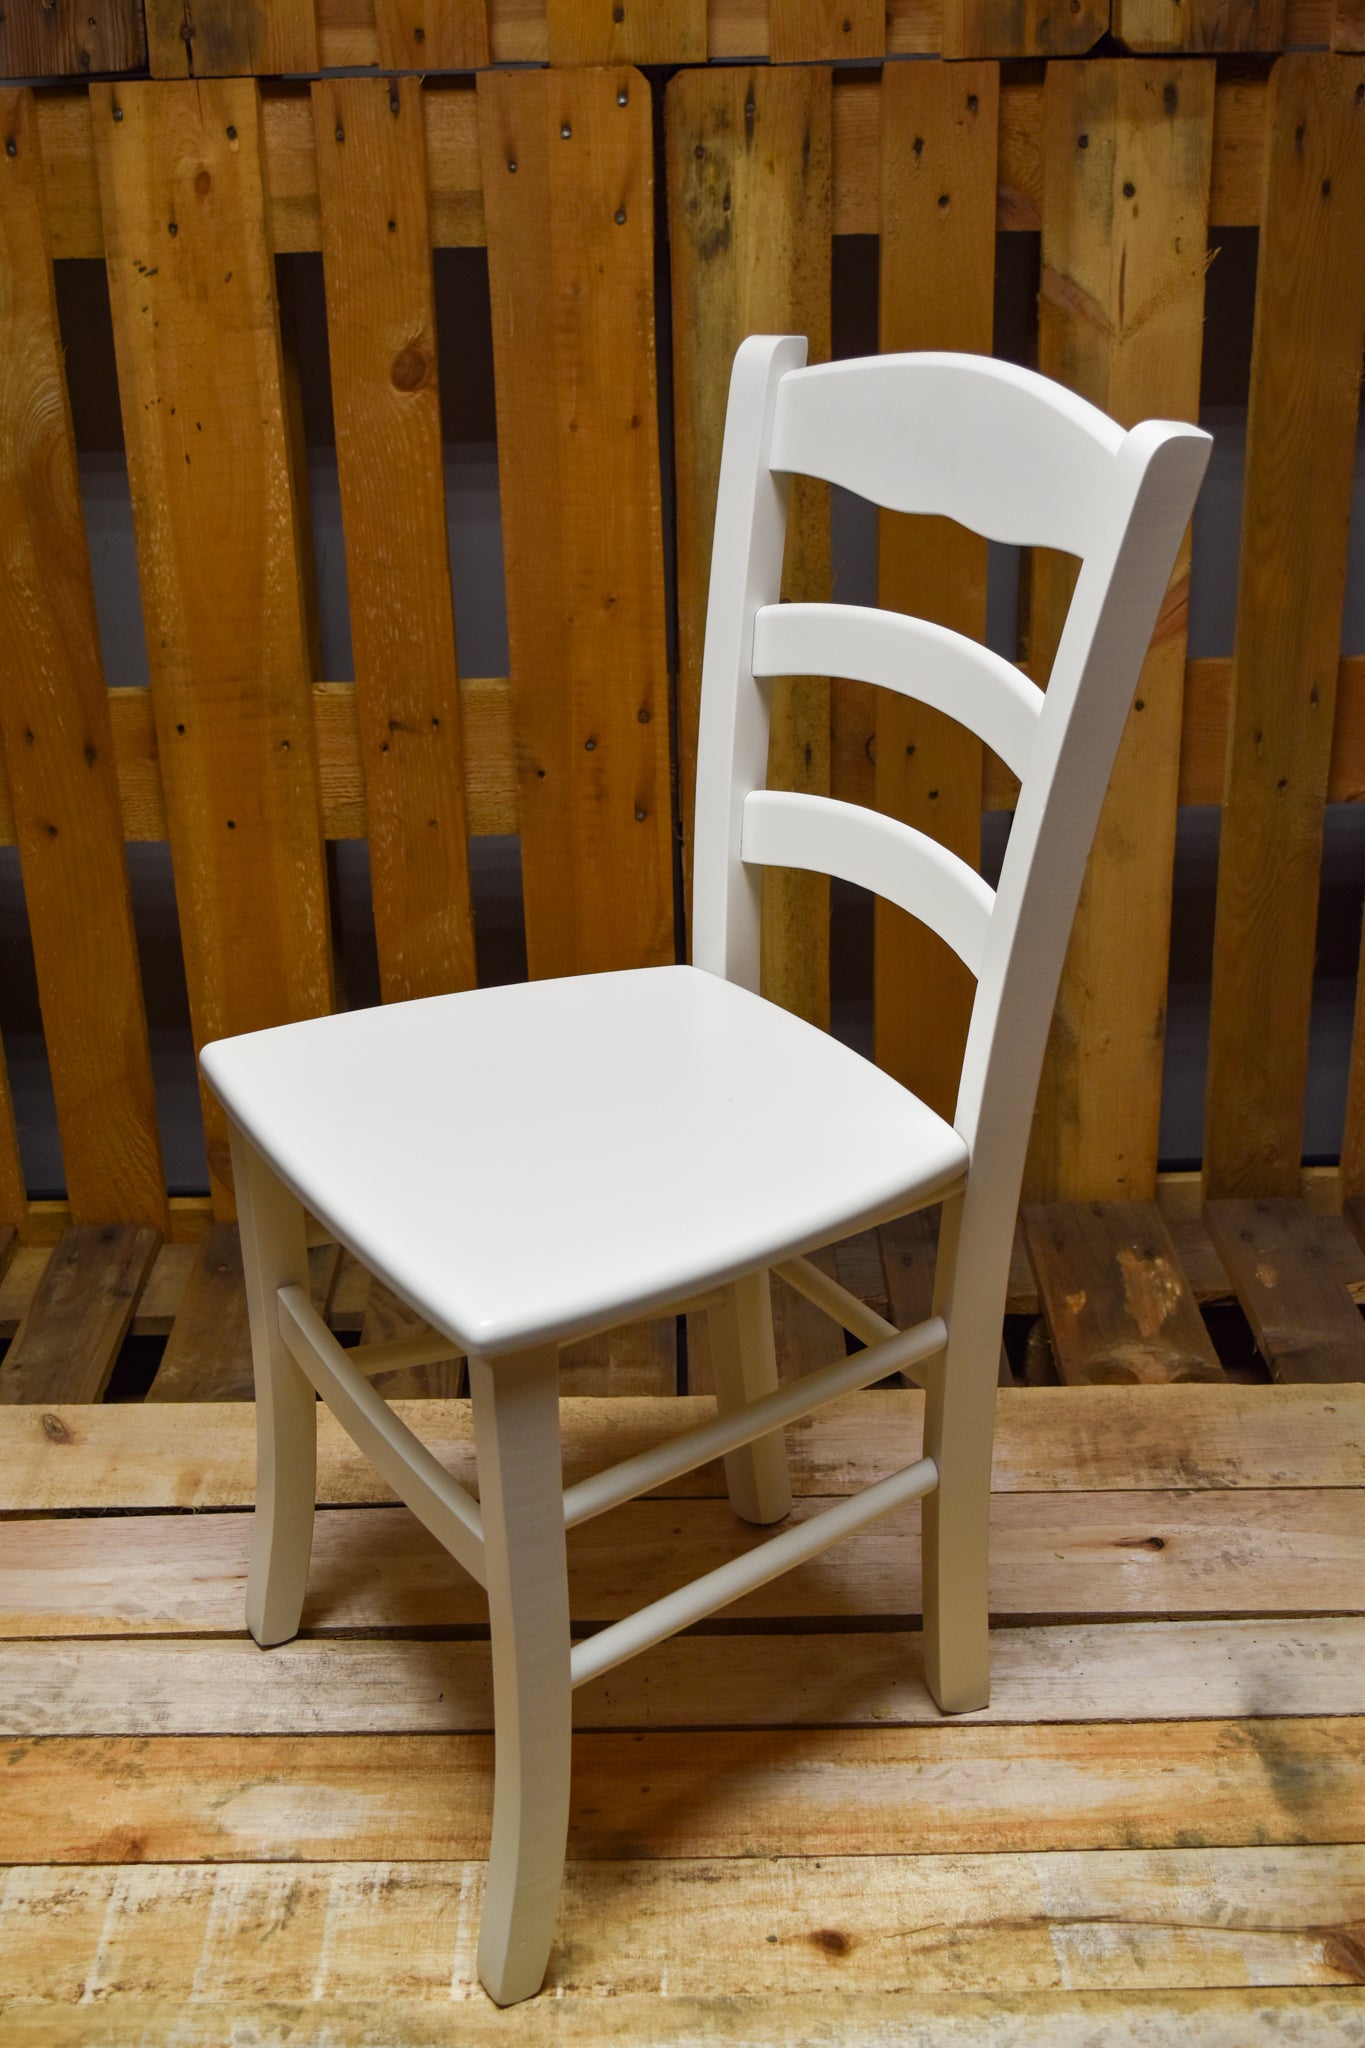 Stock sedie outlet modello NEVE laccato colore bianco giaccio seduta in legno